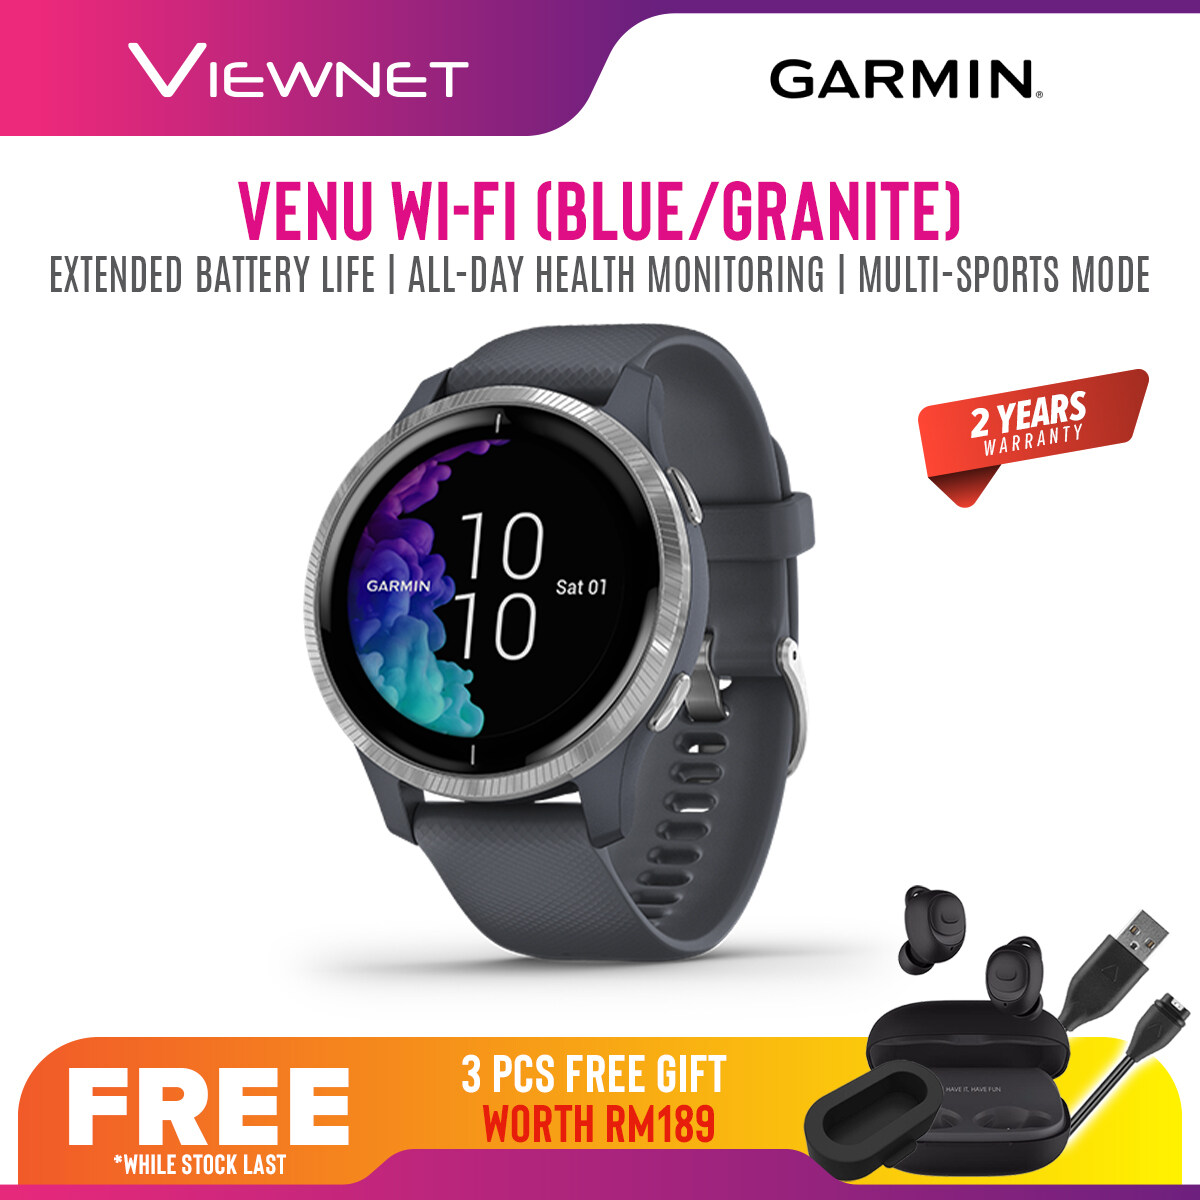 (NEW 2019) Garmin Venu GPS Smartwatch Fitness Watch with AMOLED Display